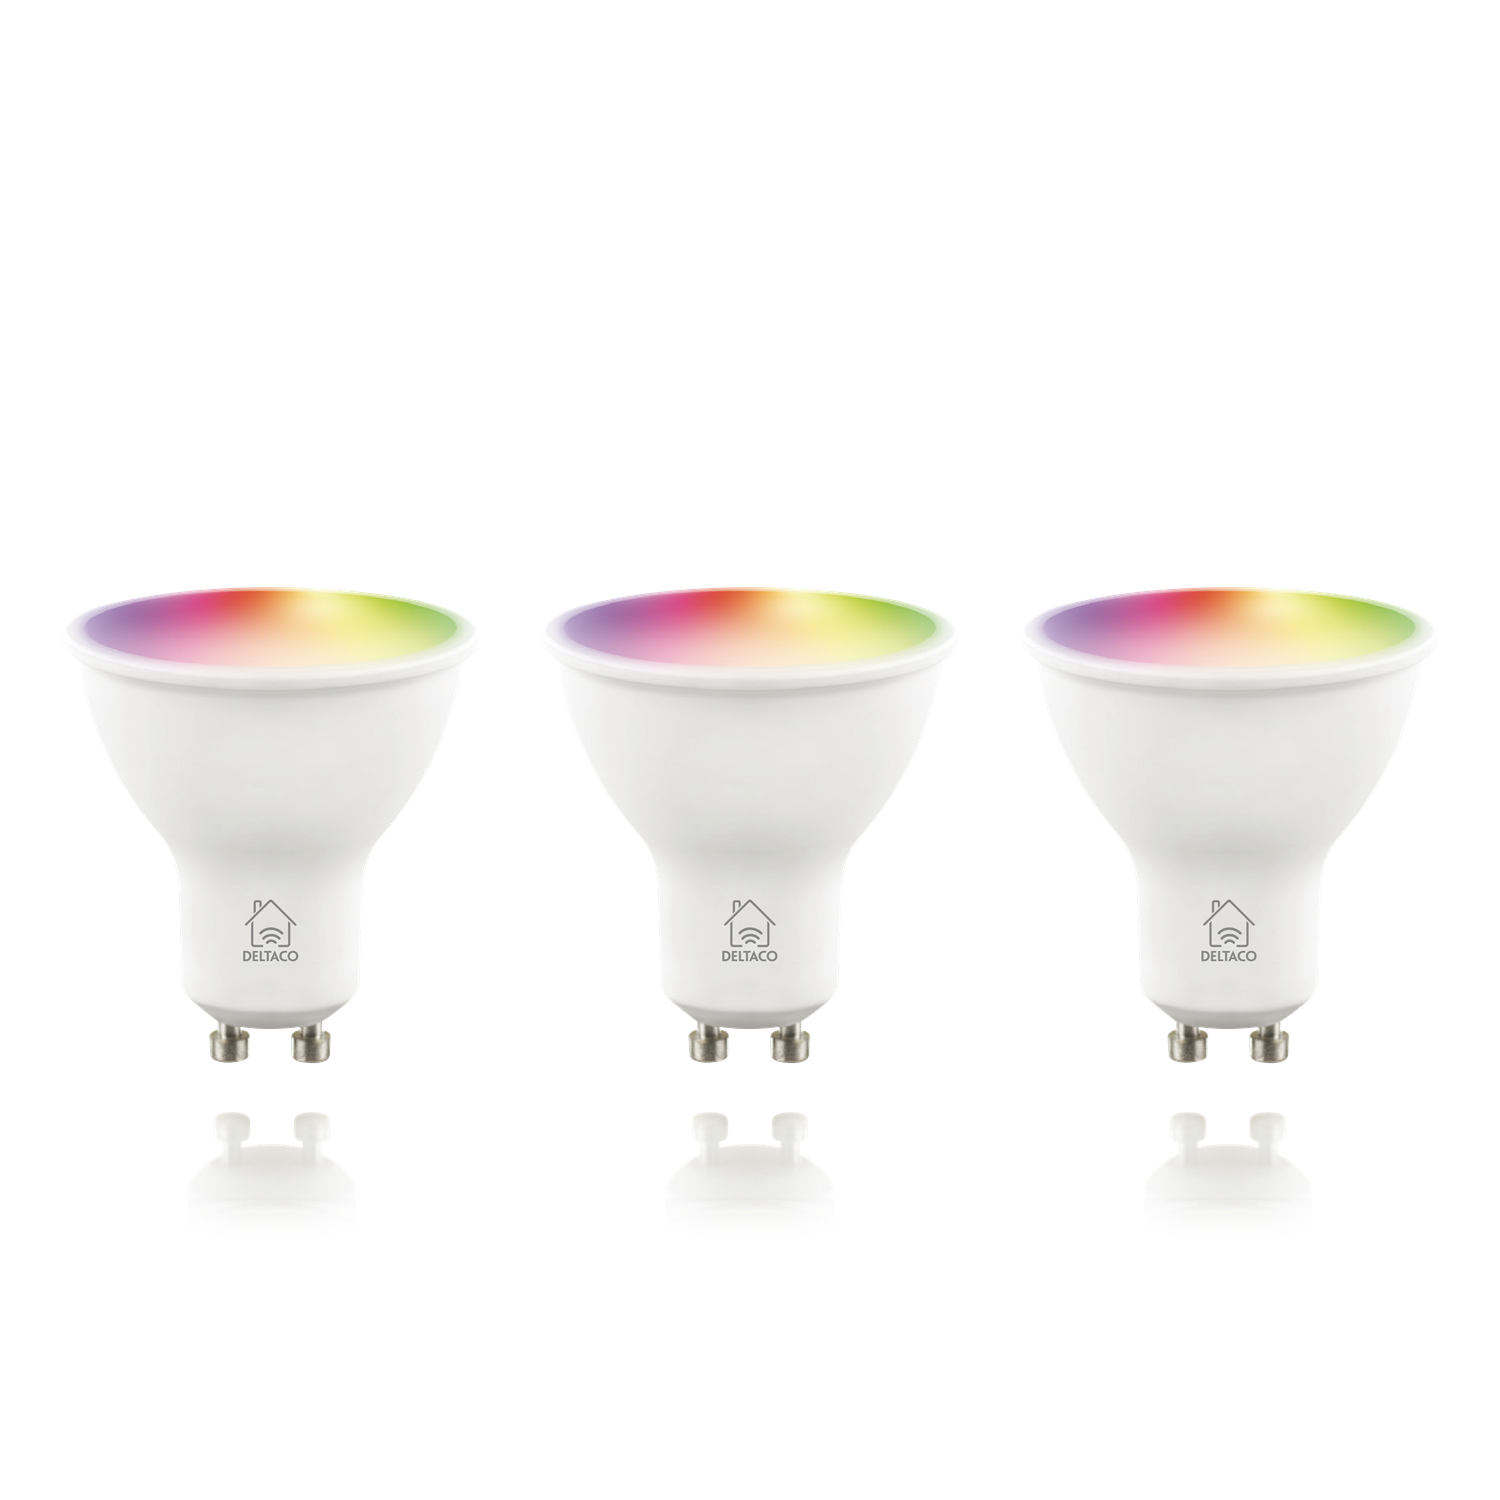 Smarter RGB HOME smart Glühbirne warmweiß, DELTACO SMART GU10 Spot